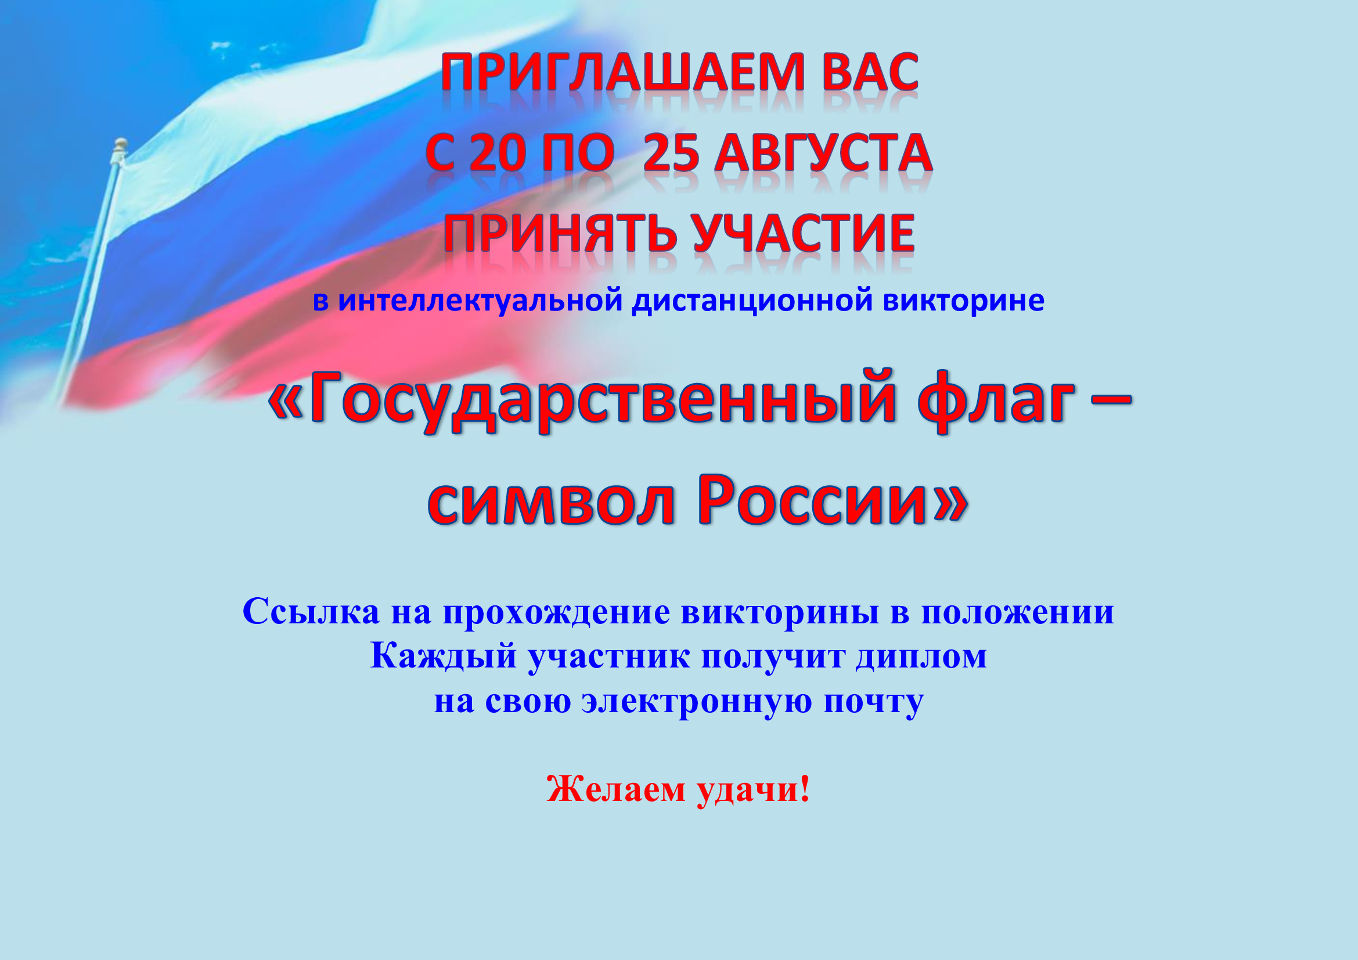 Интеллектуальная дистанционная викторина «Государственный флаг - символ России»